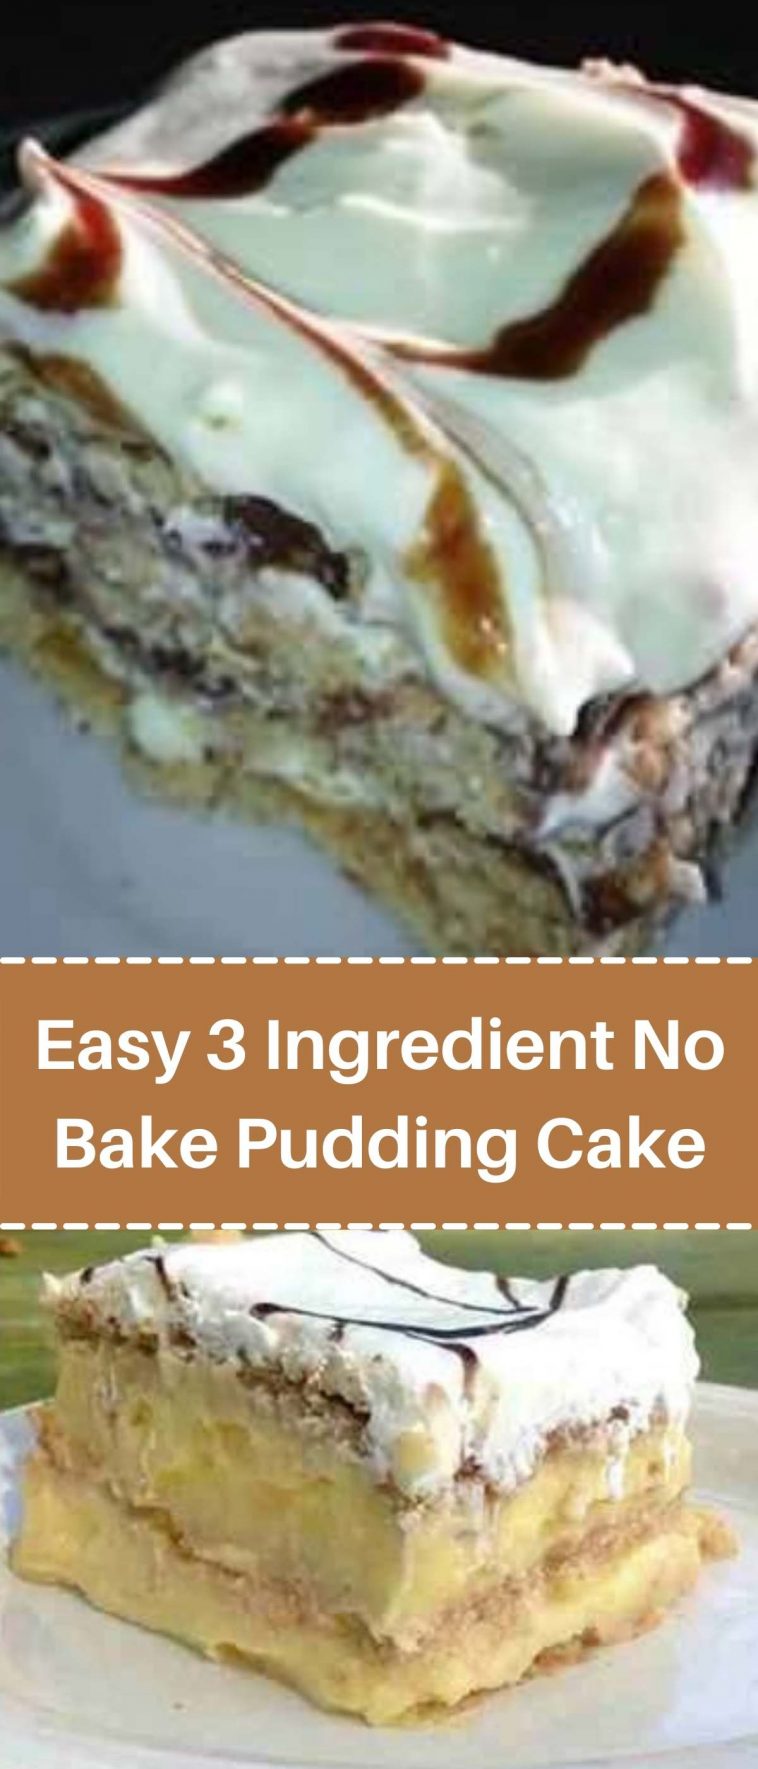 Easy 3 Ingredient No Bake Pudding Cake